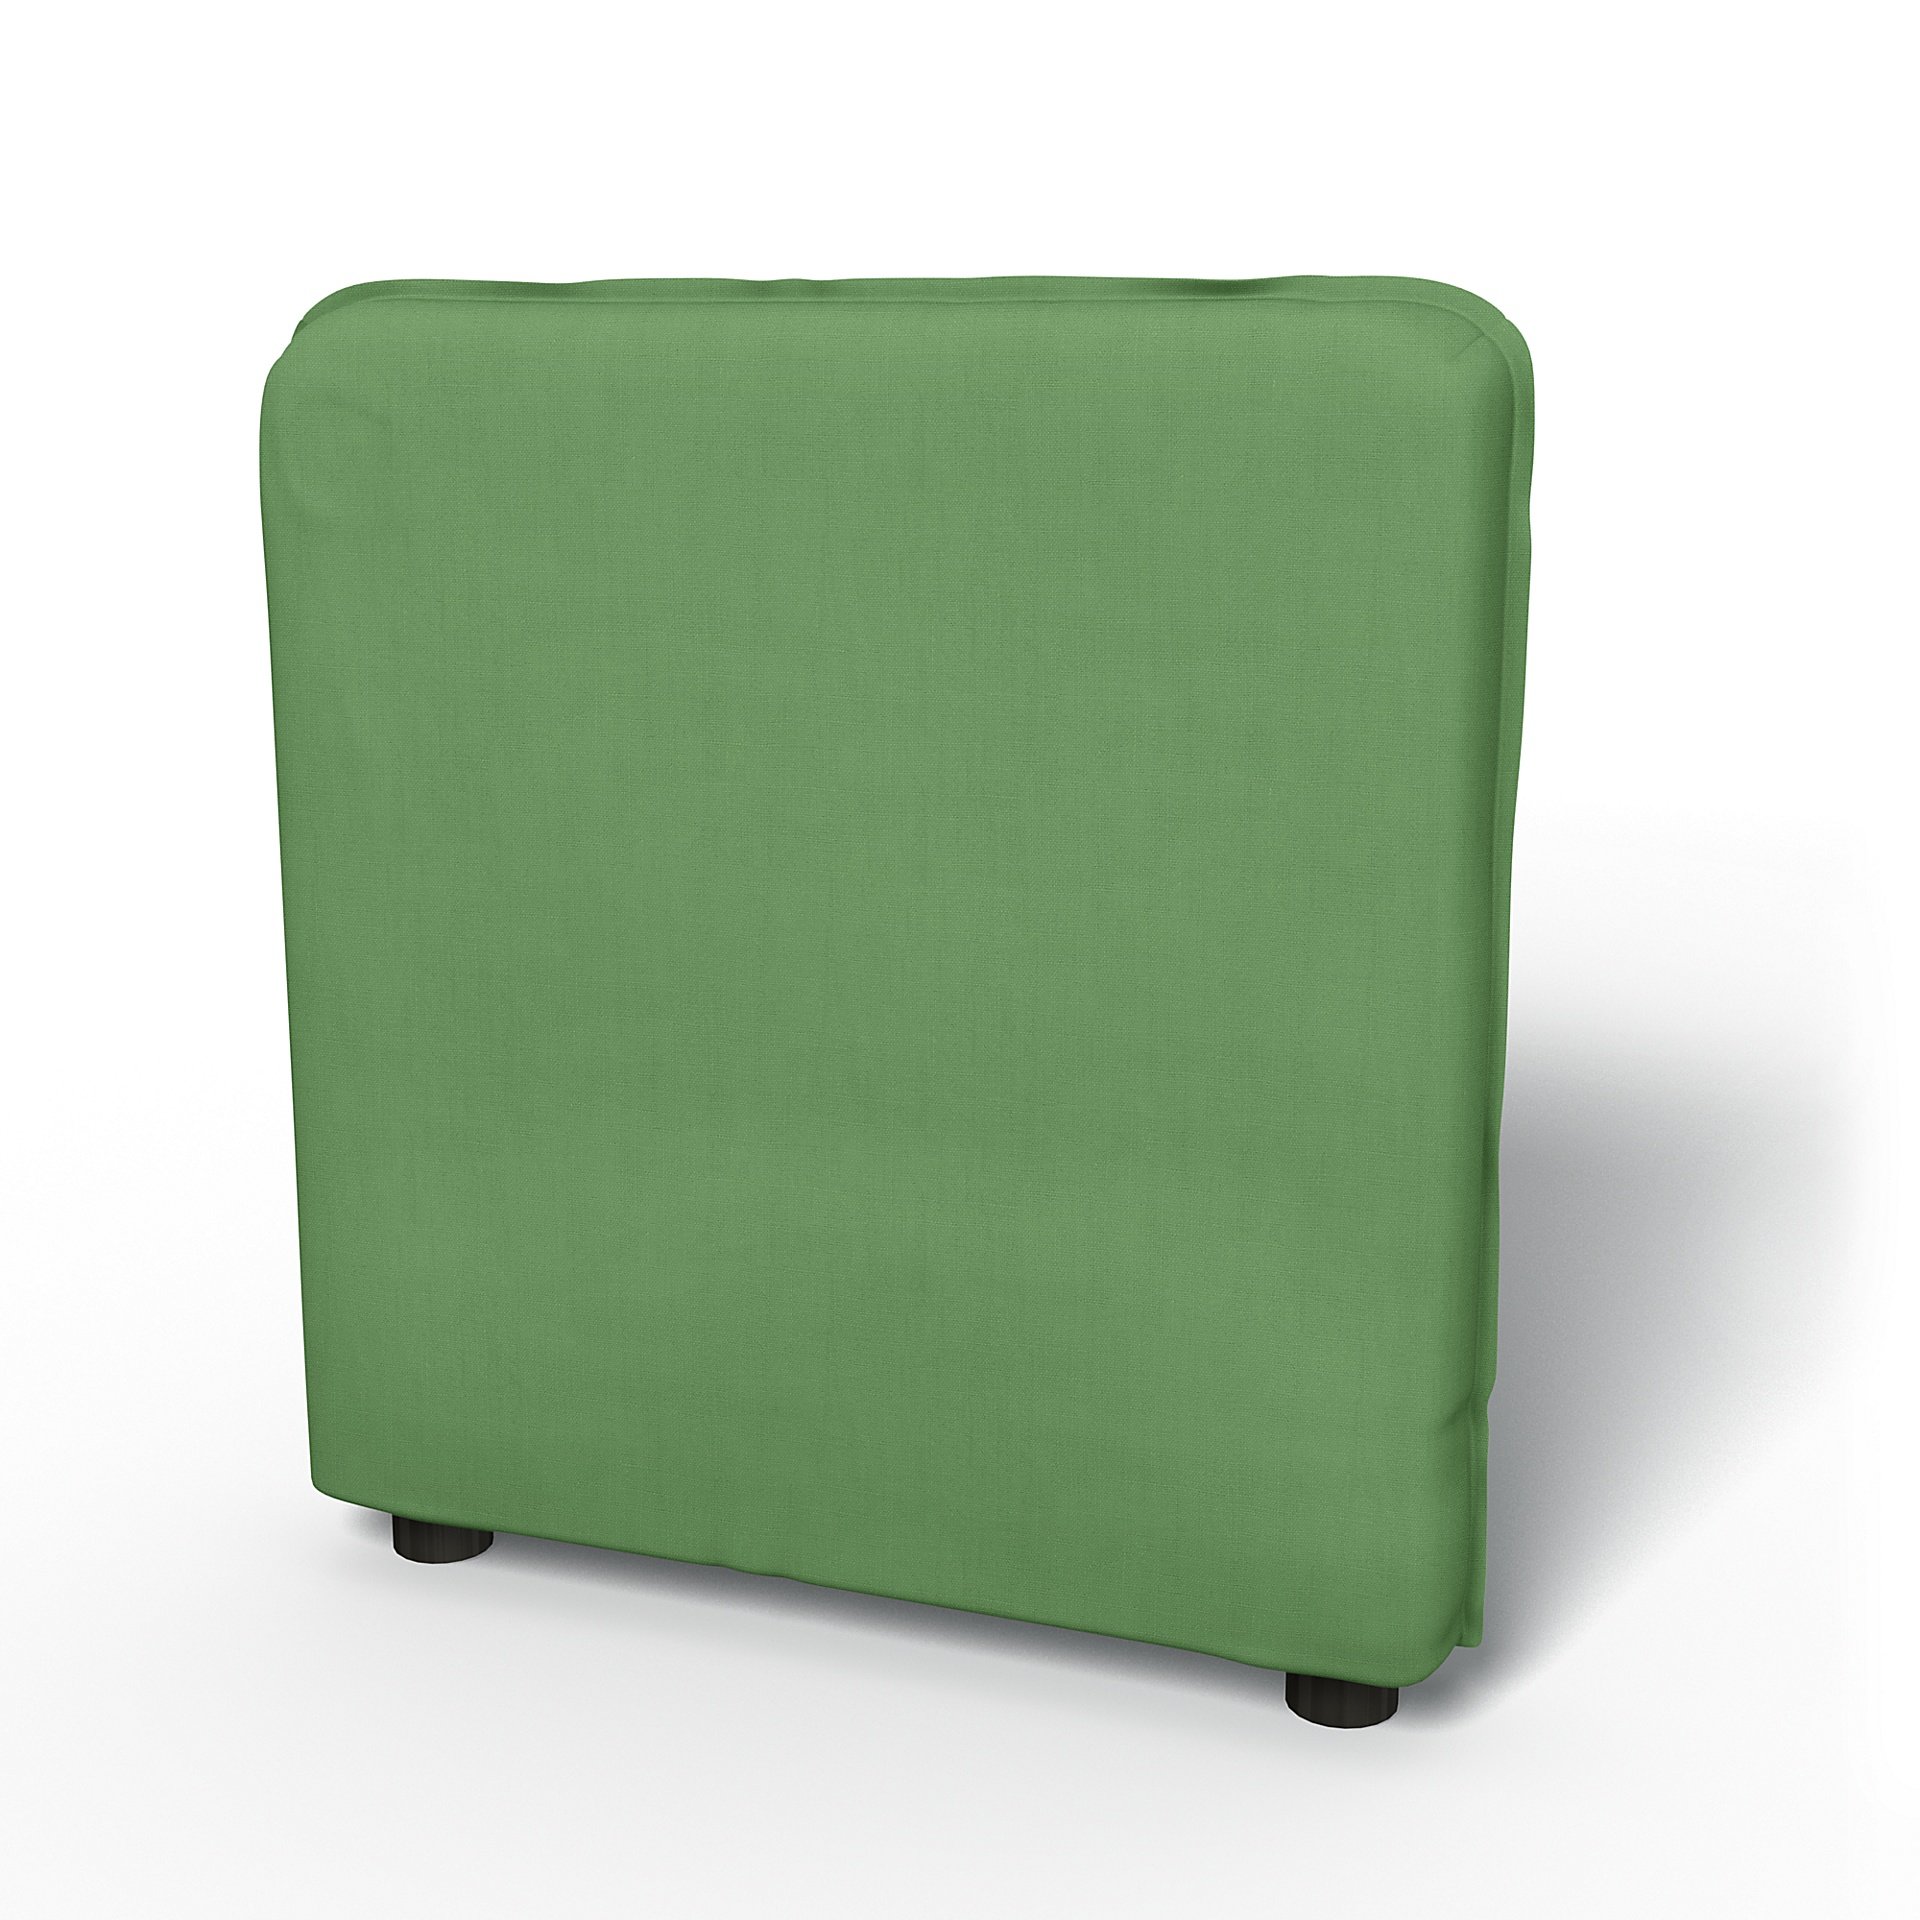 IKEA - Vallentuna Armrest Cover (80x60x13cm), Apple Green, Linen - Bemz